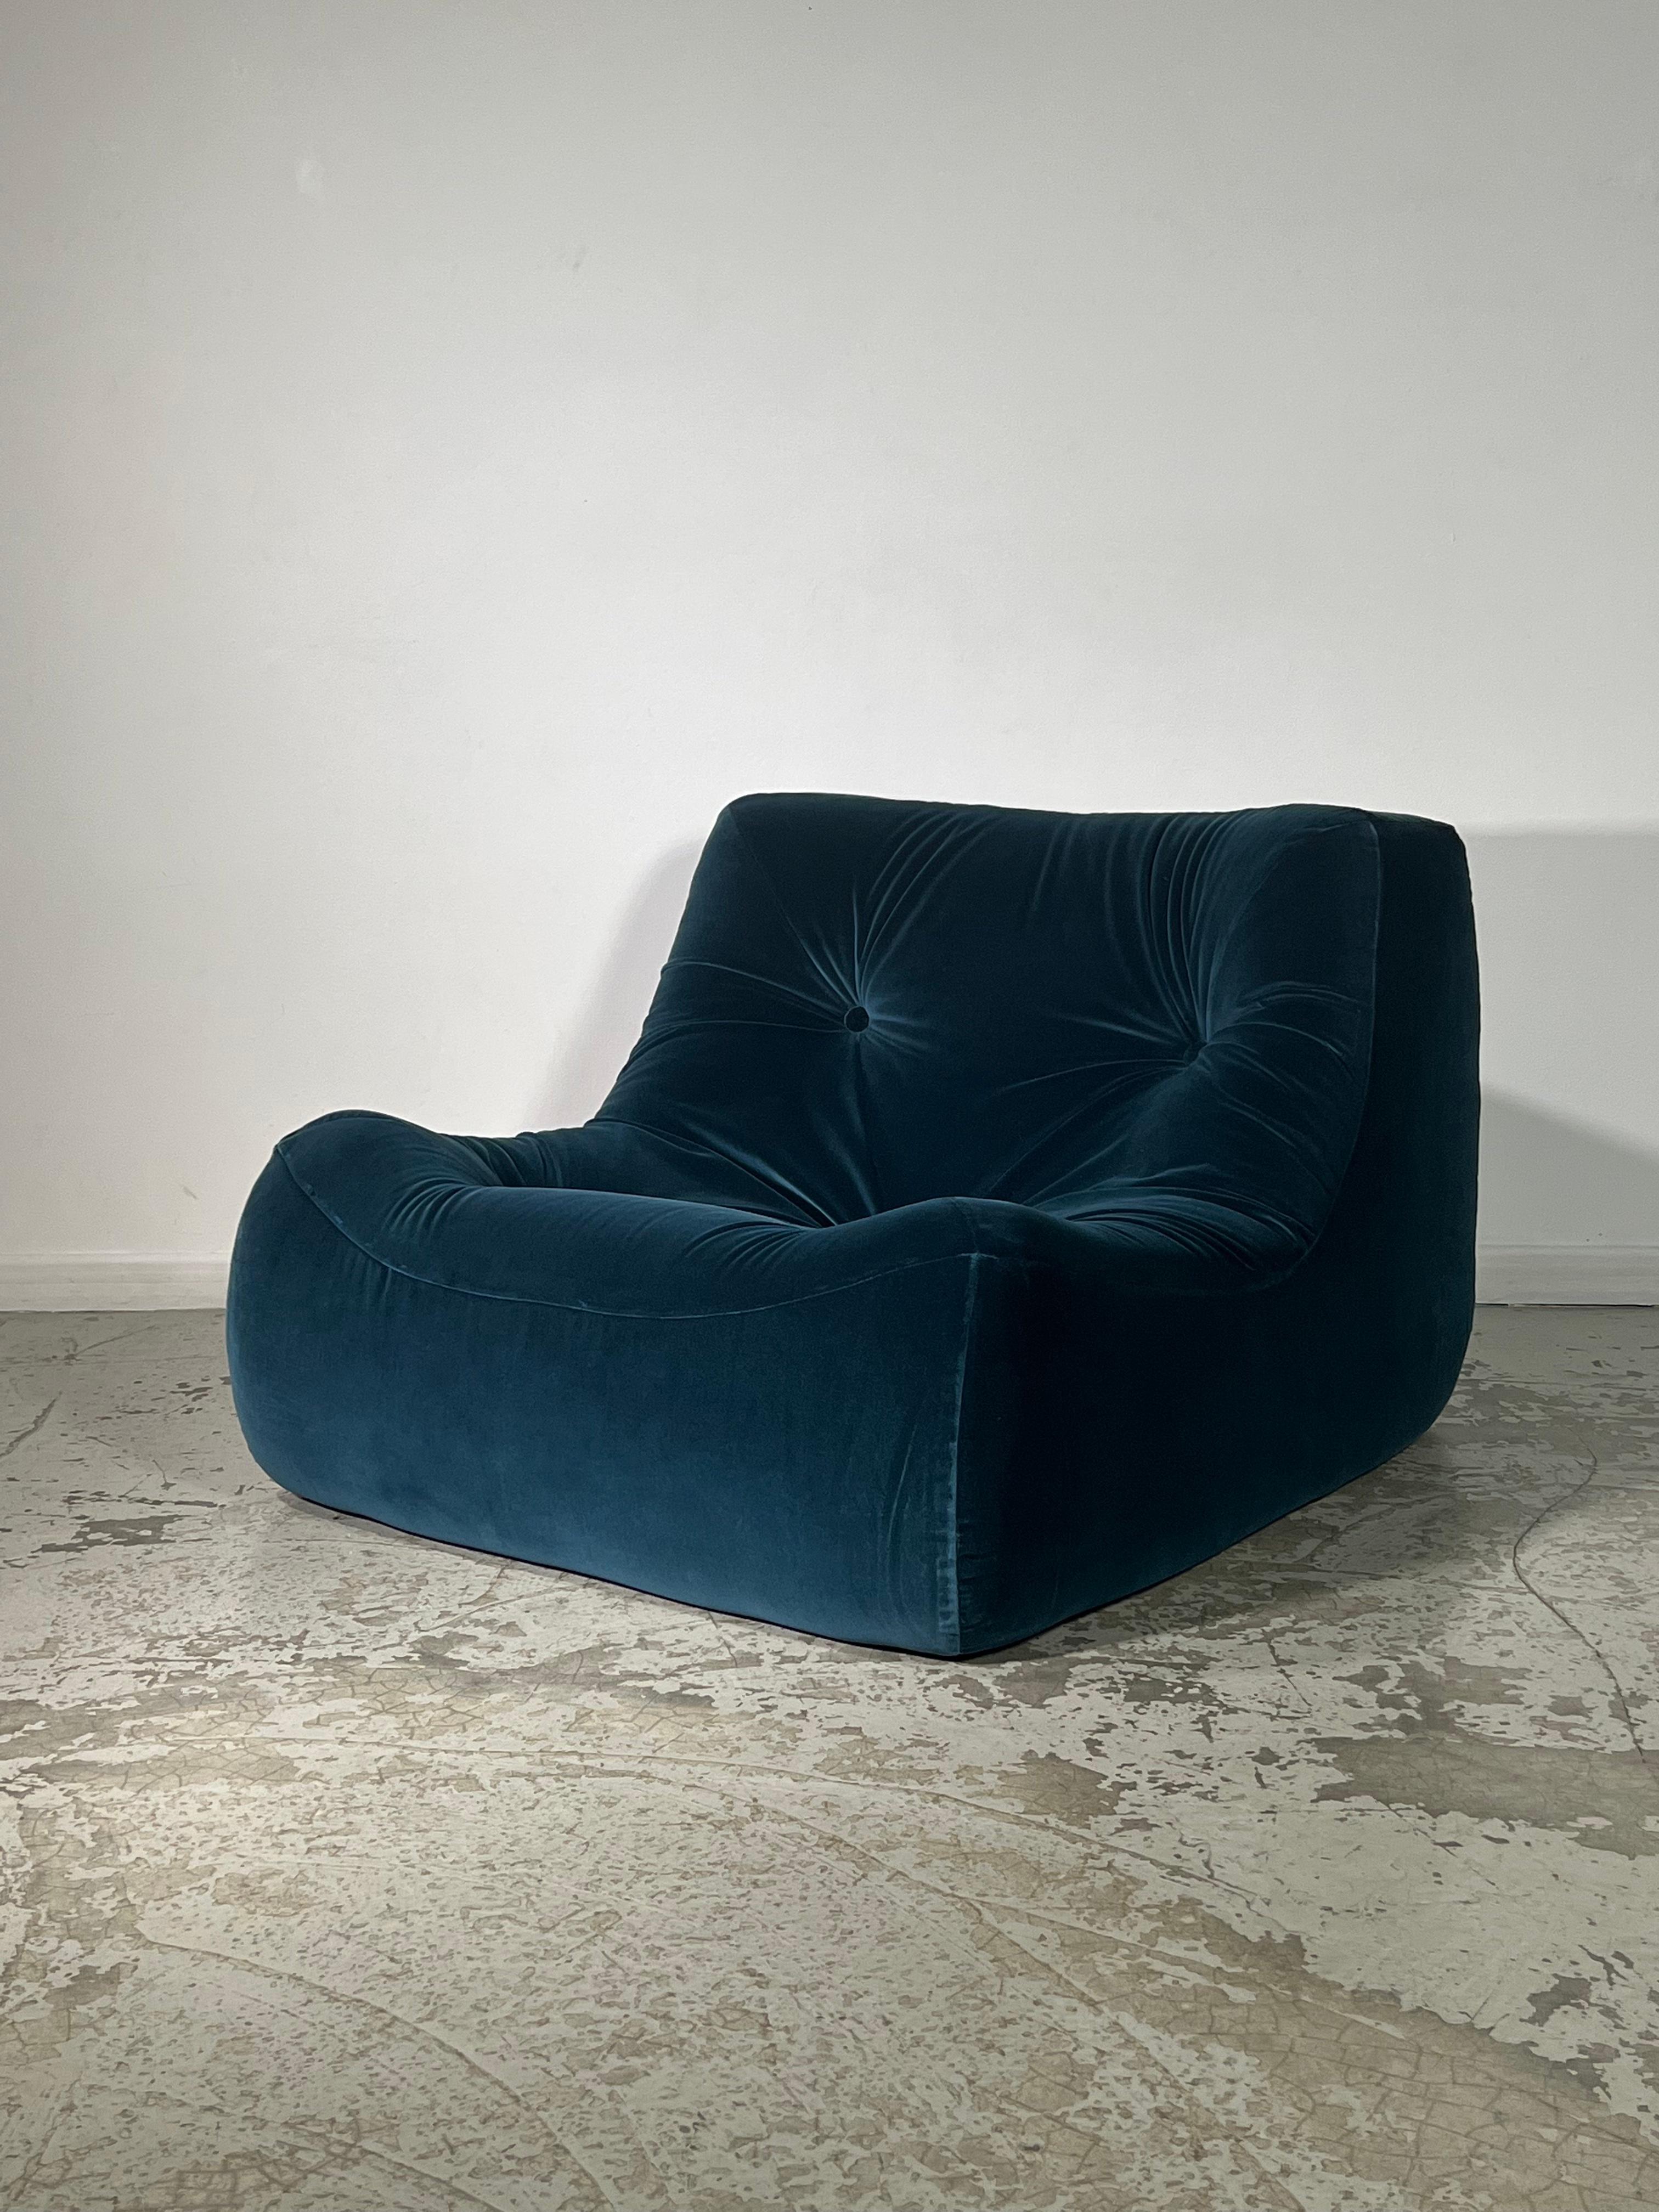 Dieser Sessel wurde in den 80er Jahren von Michel Ducaroy für Ligne Roset entworfen. Sechsundzwanzig Jahre seines Lebens verbrachte er an der Spitze der Designabteilung. Ducaroy schlug einige Deklinationen vor: zwei- oder dreisitziges Sofa, Ecksofa